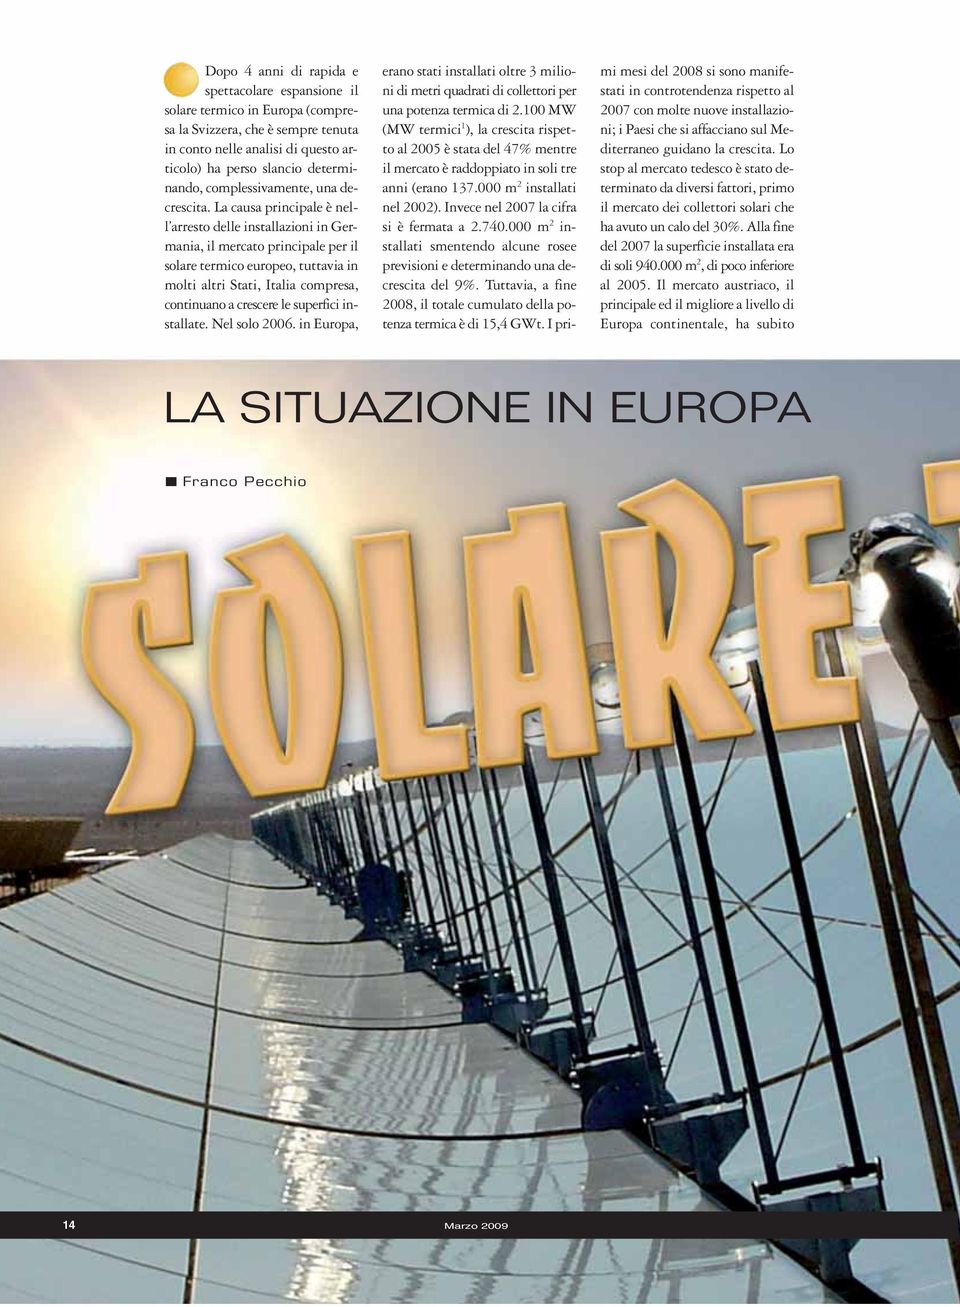 La causa principale è nell arresto delle installazioni in Germania, il mercato principale per il solare termico europeo, tuttavia in molti altri Stati, Italia compresa, continuano a crescere le